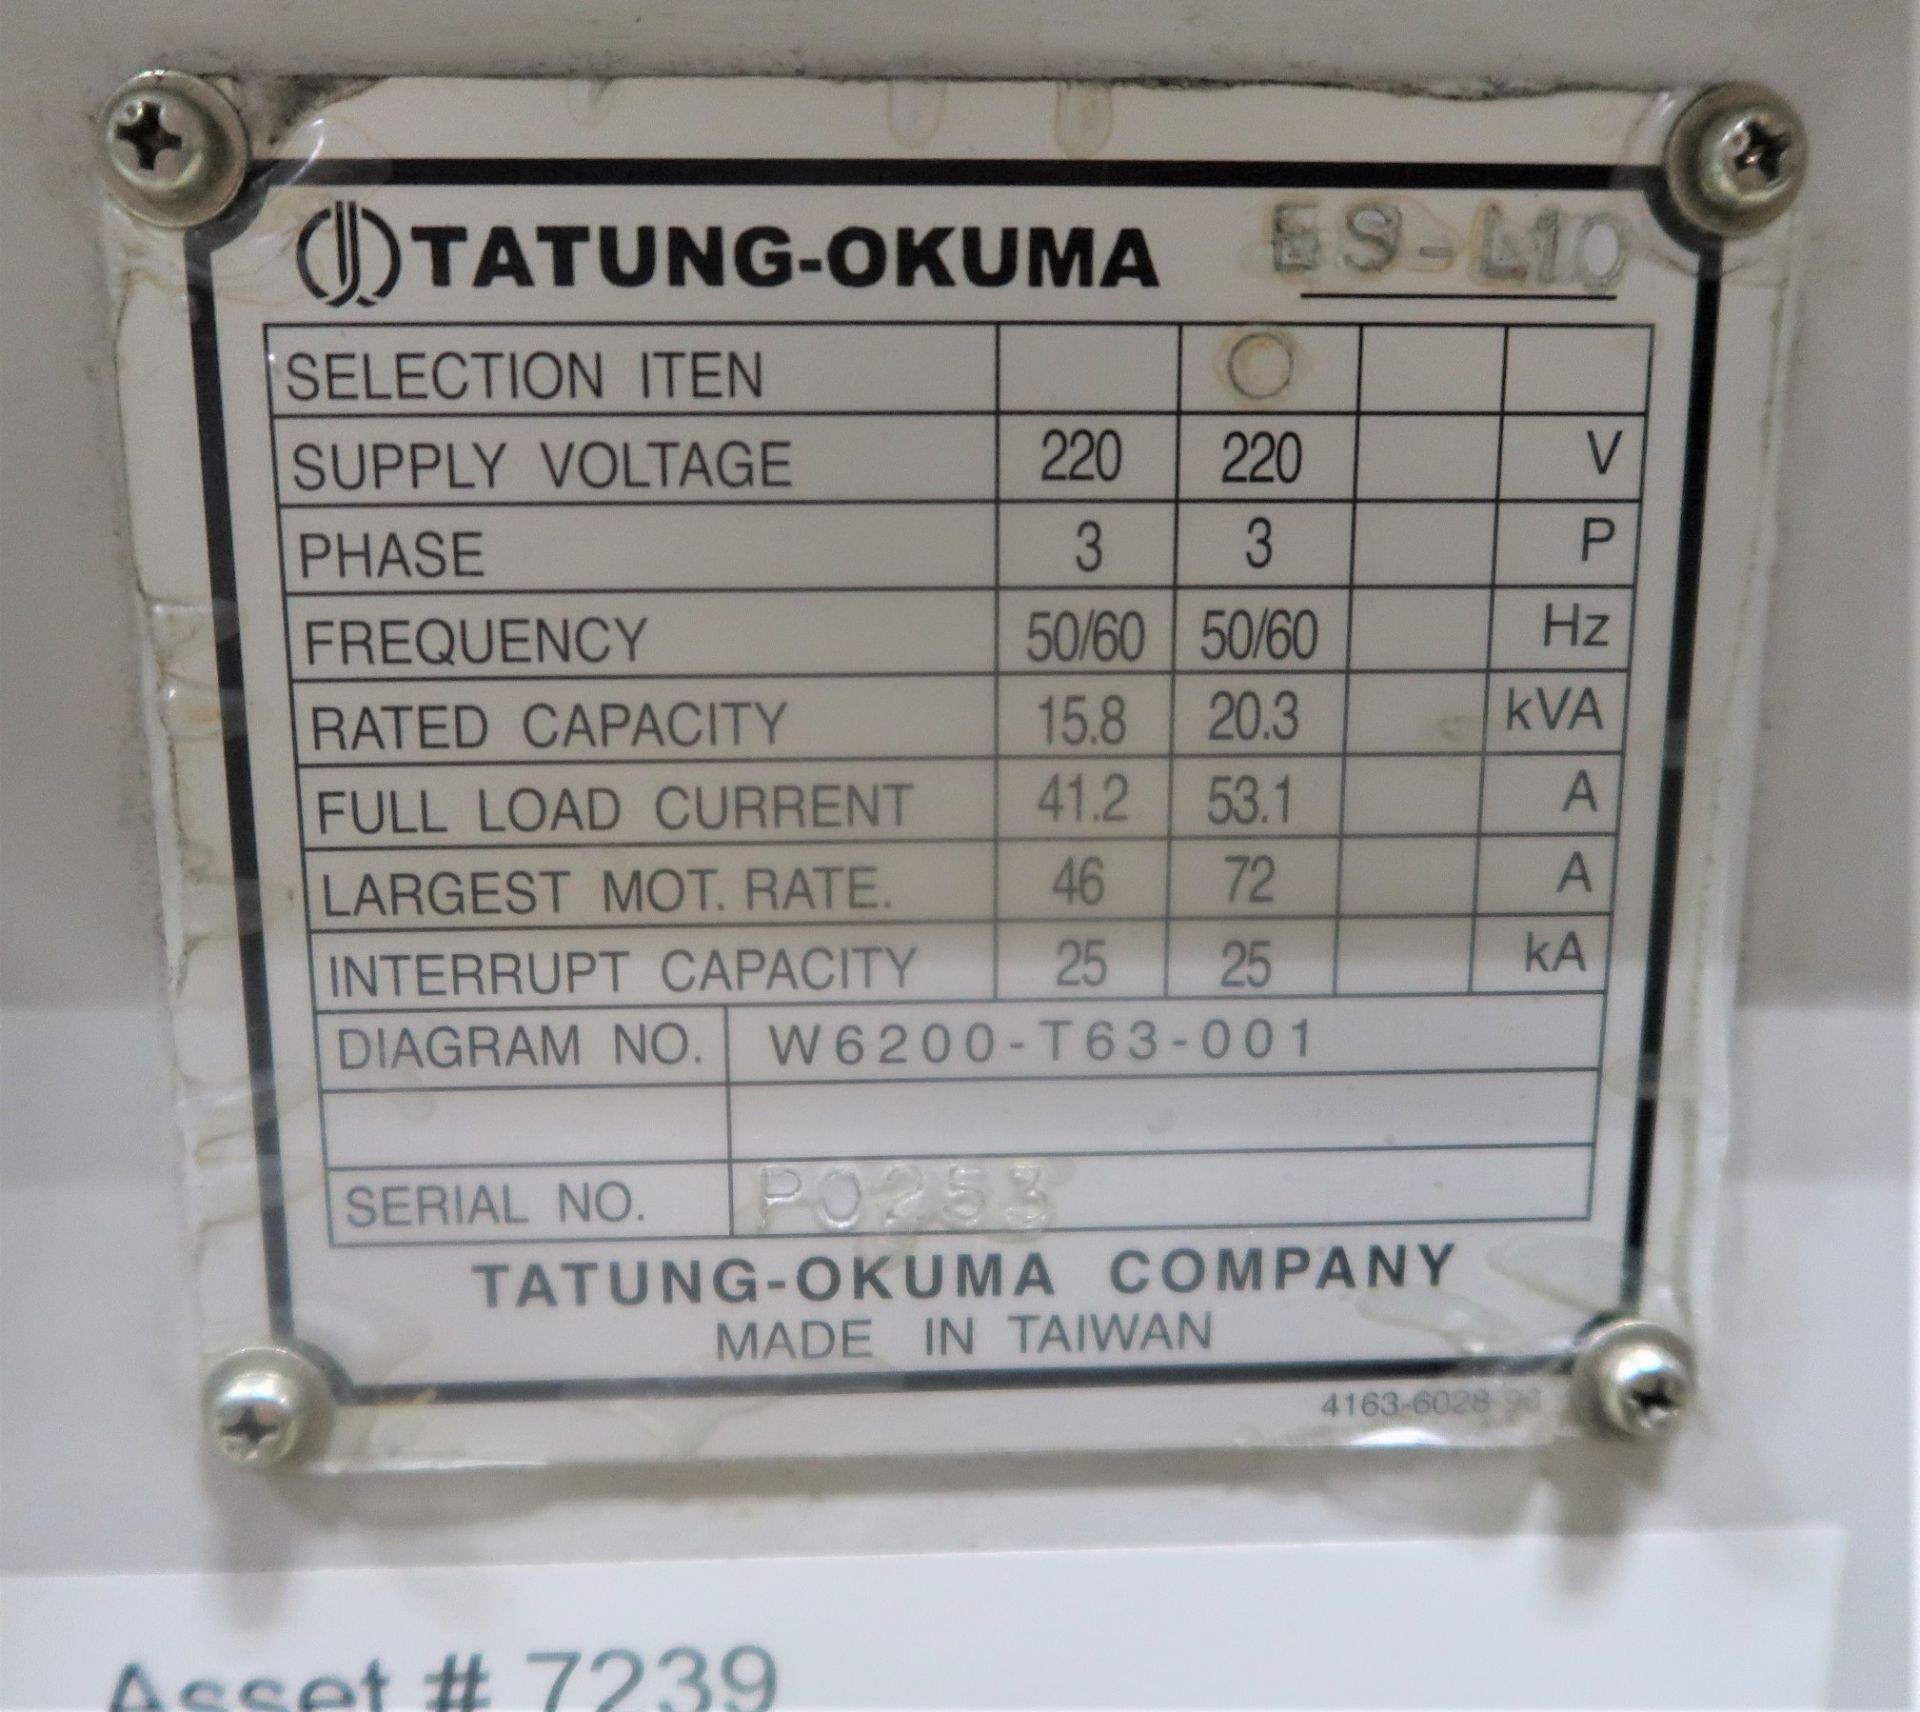 Okuma ES-L10 2-Axis CNC Turning Center lathe, S/N PO253 - Image 4 of 4